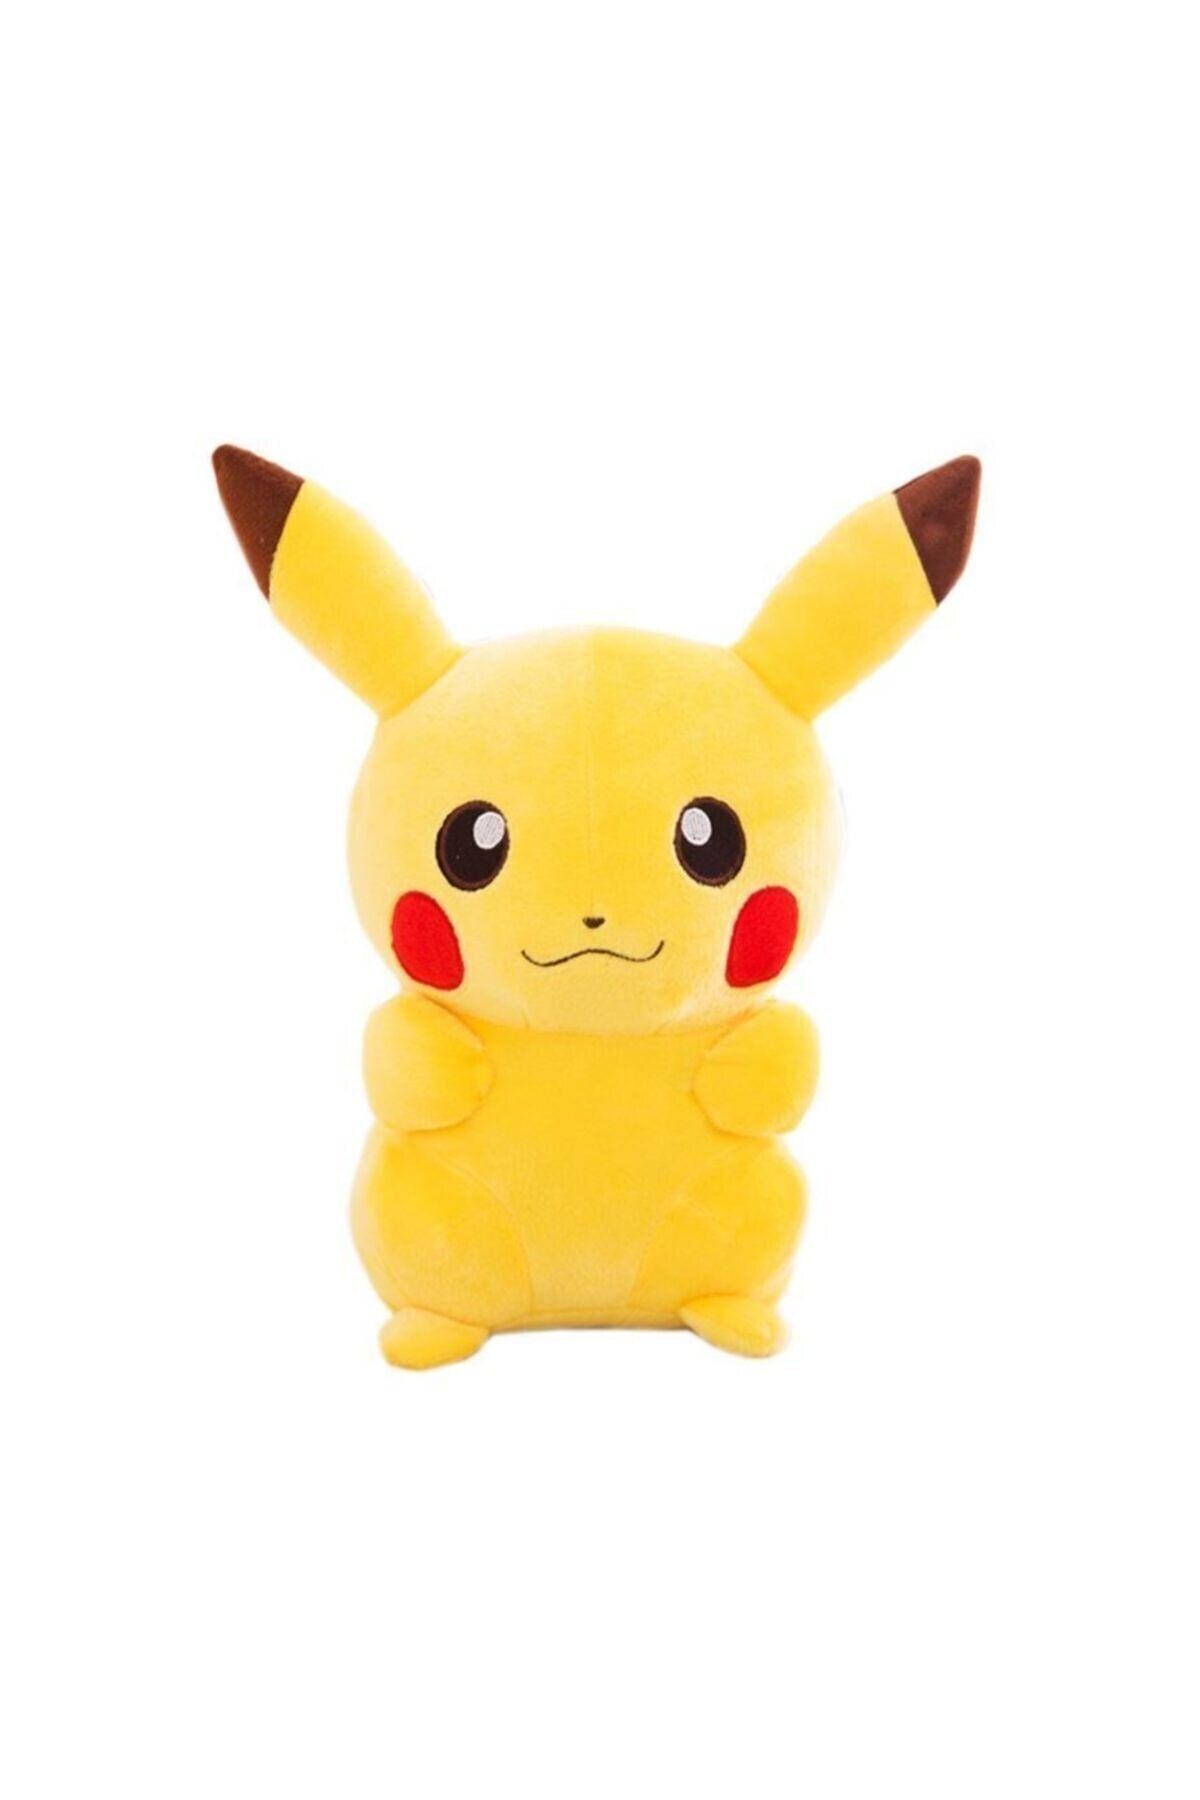 can oyuncak Oyuncak Pokemon Pikachu Peluş Oyuncak Pikaçu